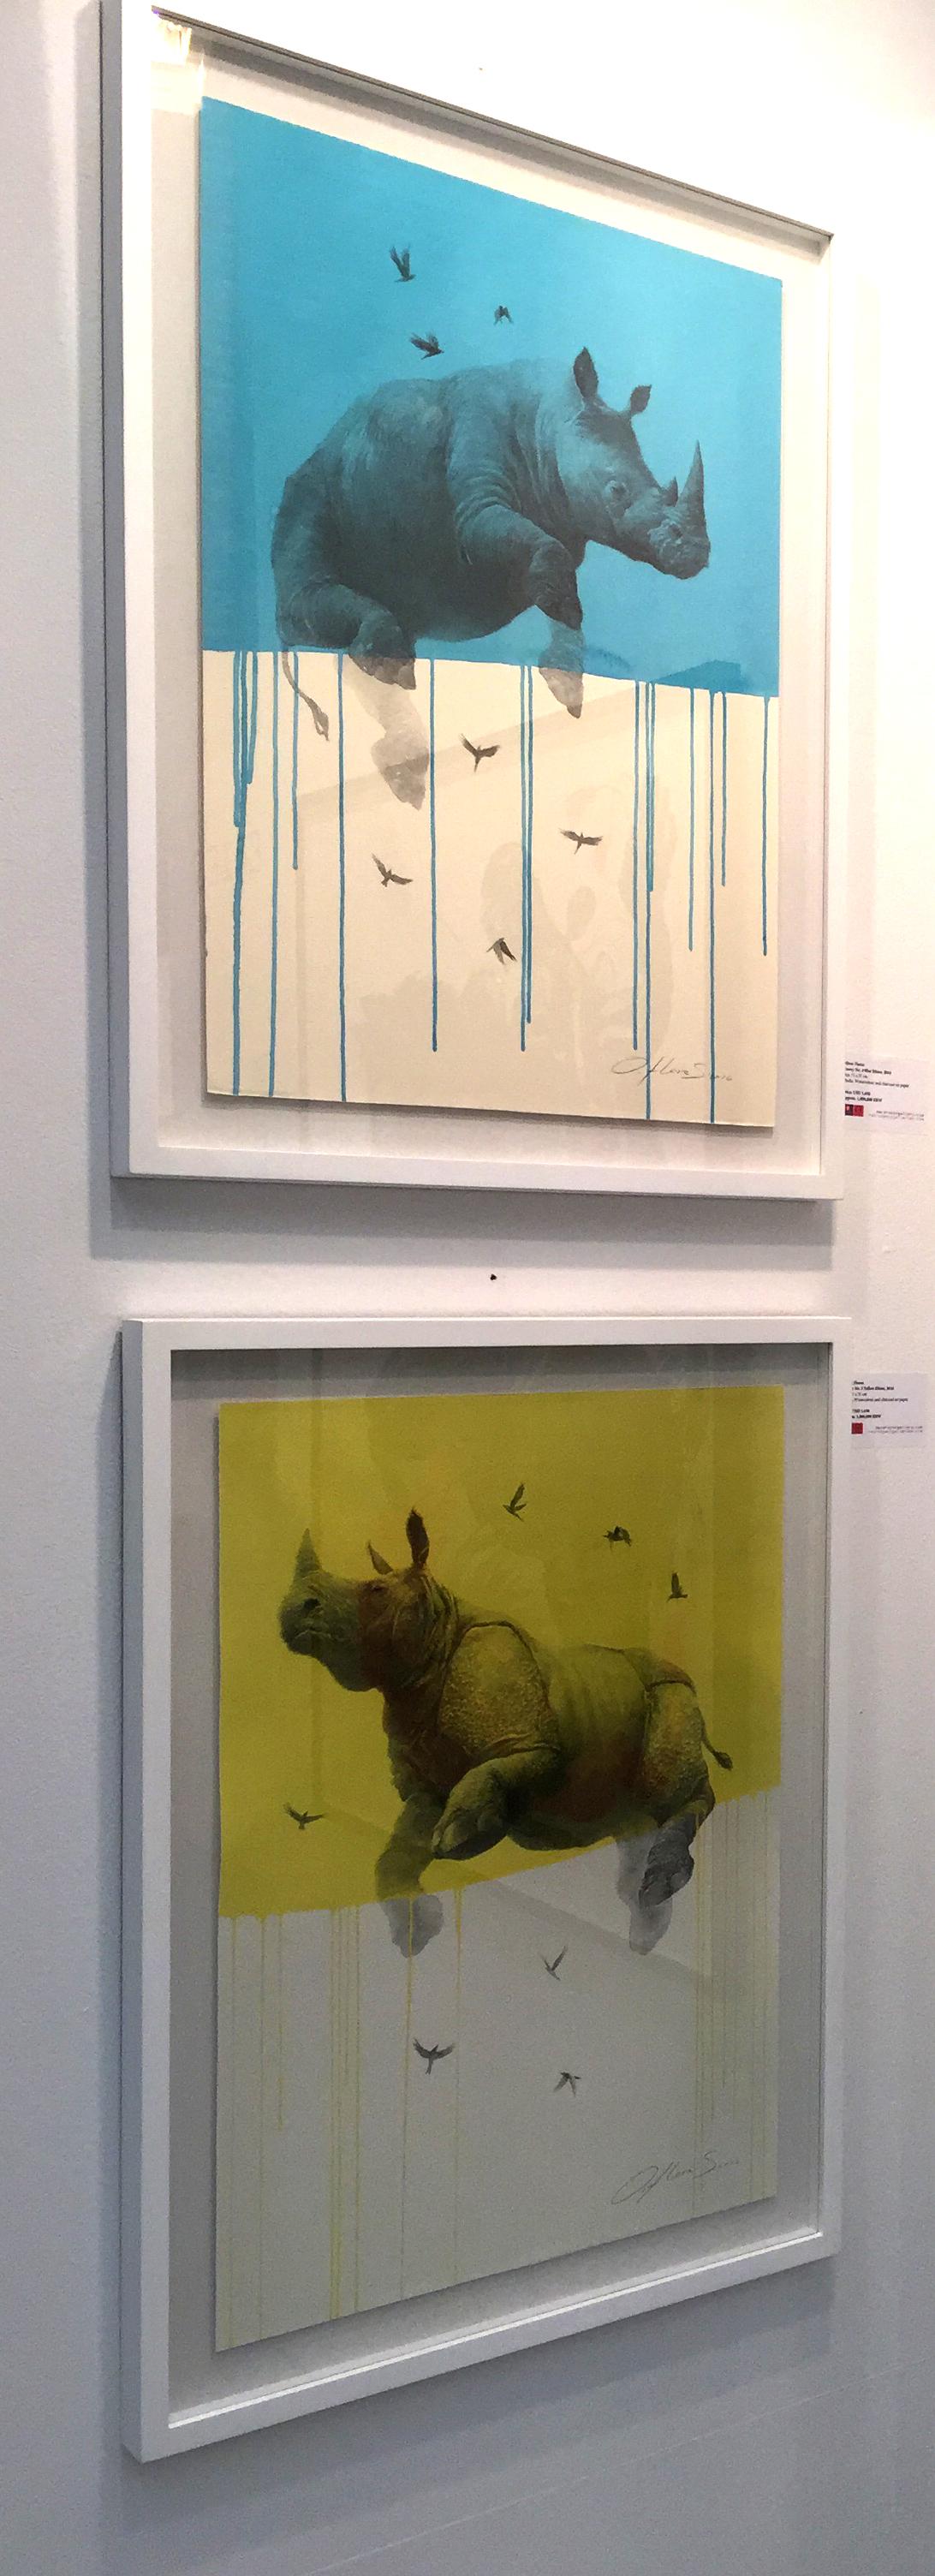 Rhino jaune Jouney n° 6, aquarelle et fusain représentant des rhinocéros et des oiseaux volants - Painting de Oliver Flores